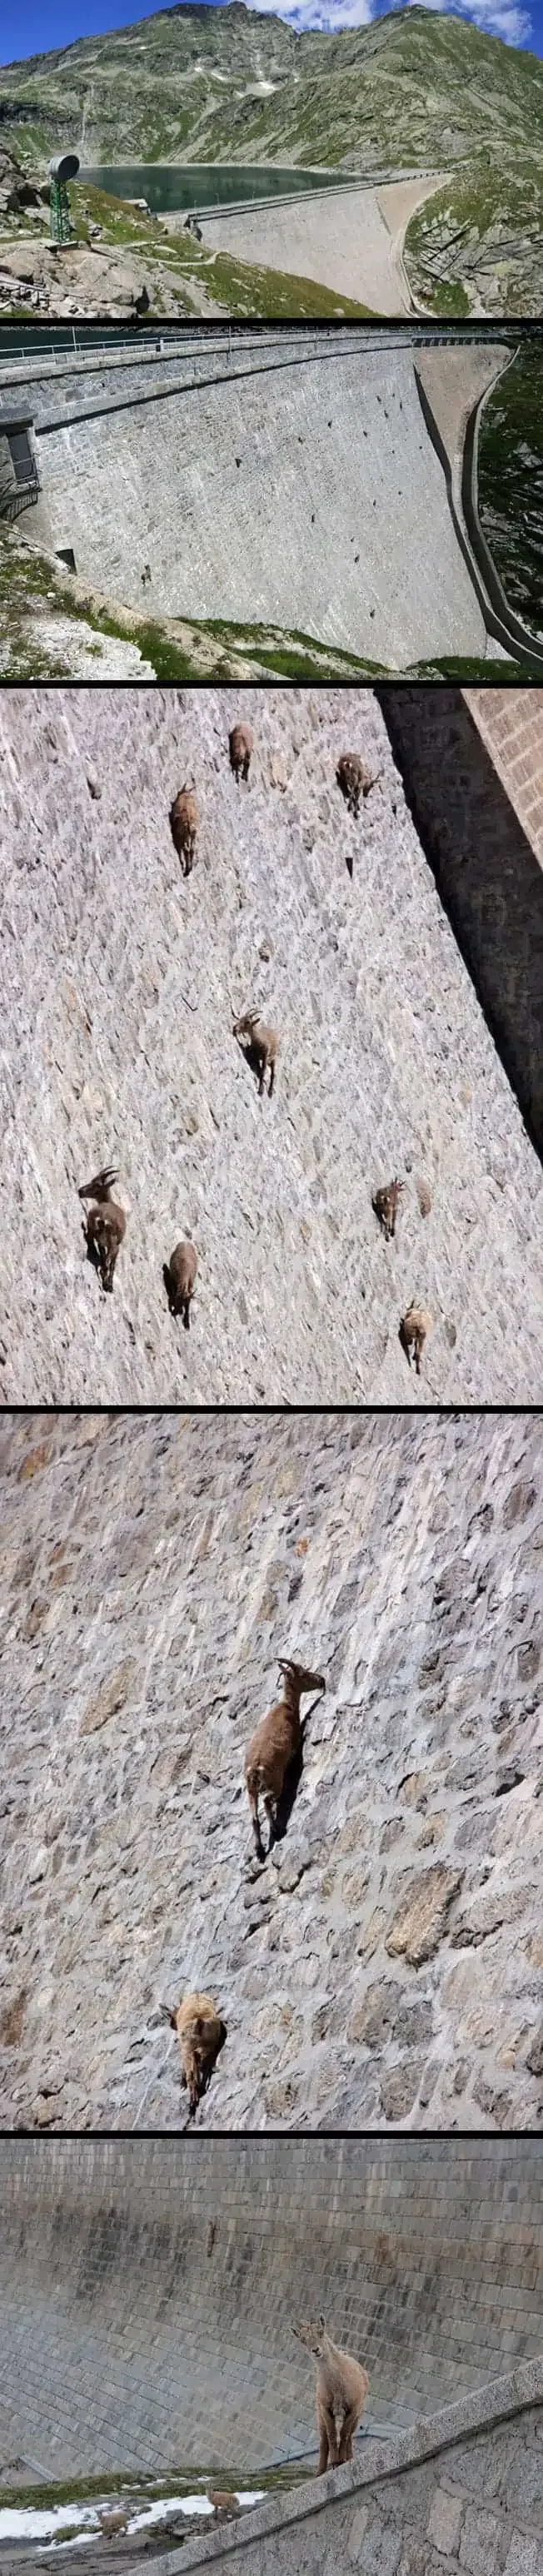 alpesi kőszáli kecskék (Capra ibex), akik megkérdőjelezik, amit a gravitációról tudunk